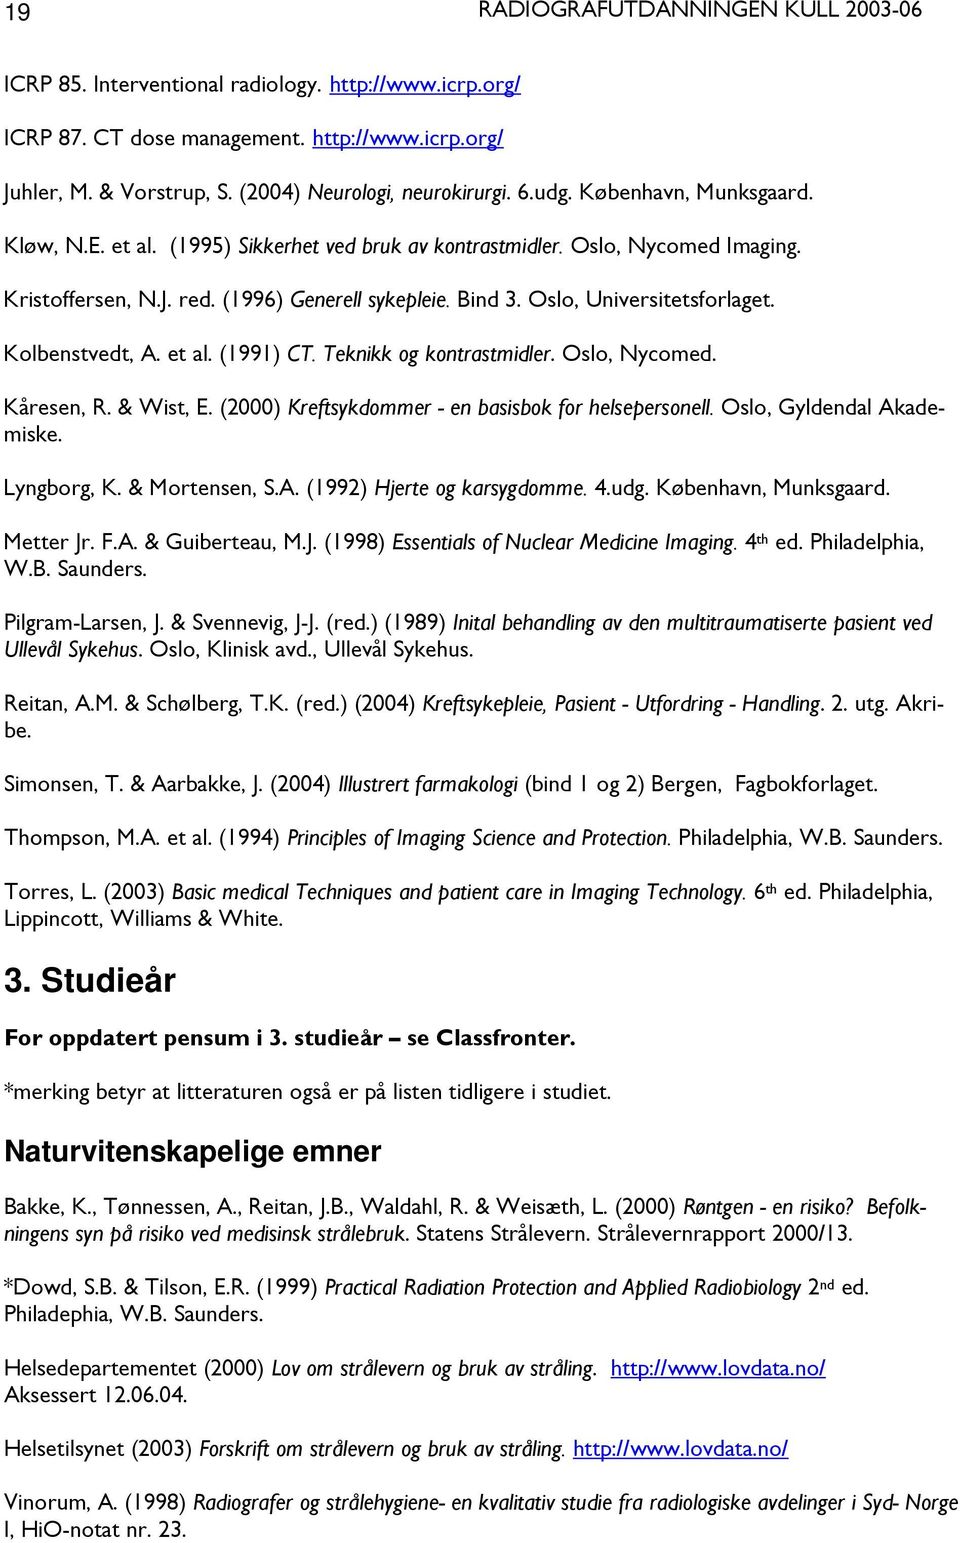 Teknikk og kontrastmidler. Oslo, Nycomed. Kåresen, R. & Wist, E. (2000) Kreftsykdommer - en basisbok for helsepersonell. Oslo, Gyldendal Akademiske. Lyngborg, K. & Mortensen, S.A. (1992) Hjerte og karsygdomme.